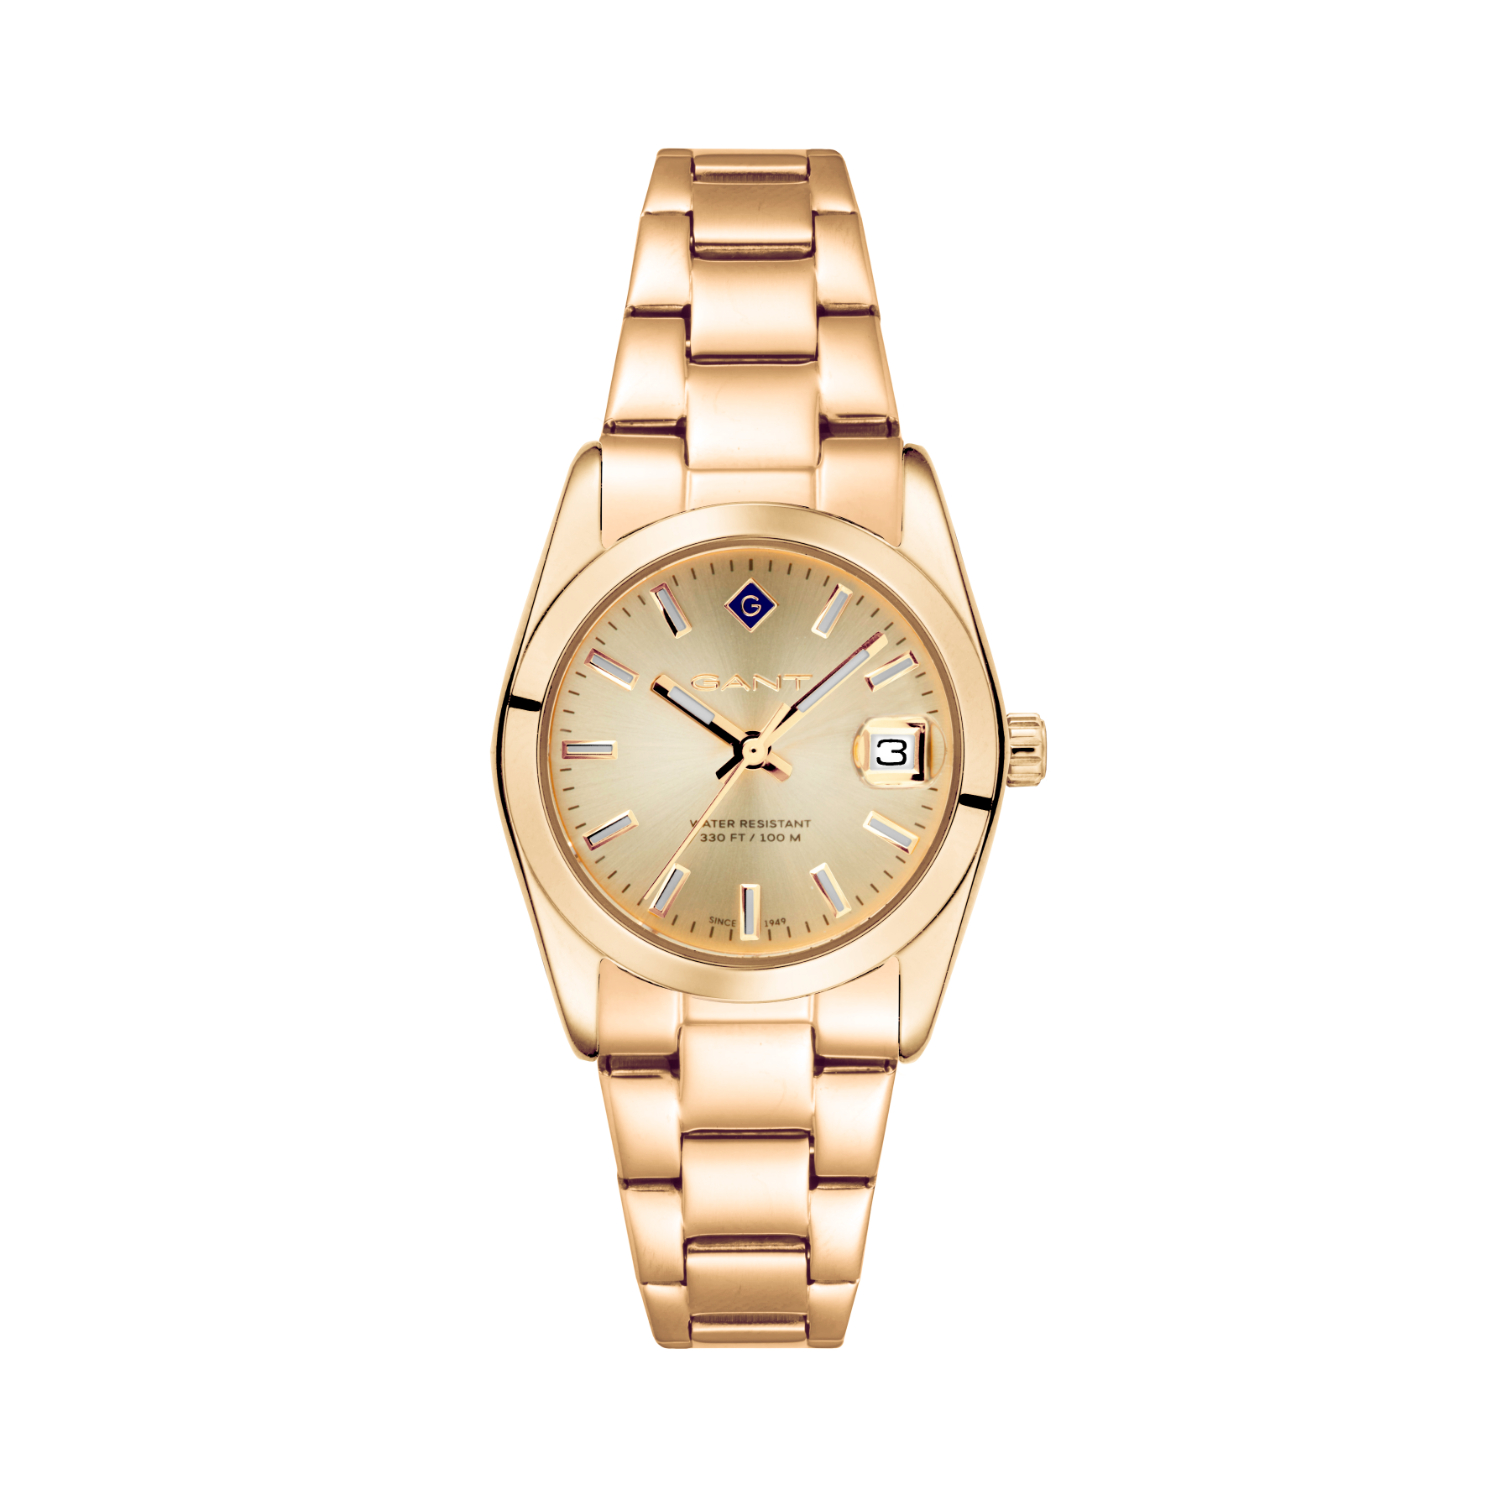 Γυναικείο ρολόι GANT από χρυσό ανοξείδωτο ατσάλι με χρυσό καντράν και μπρασελέ.